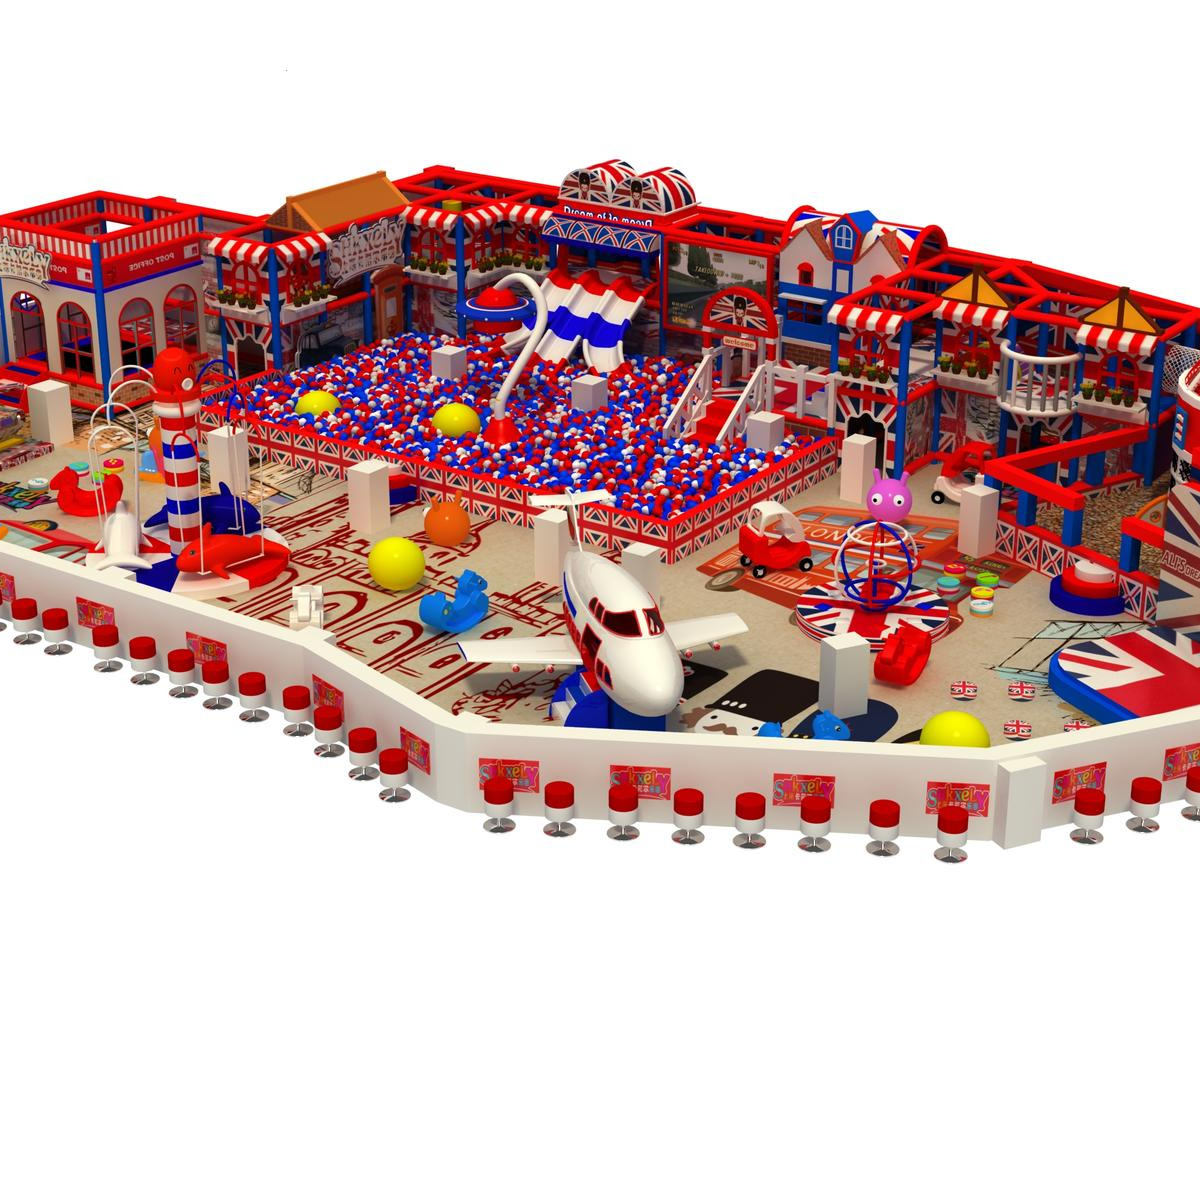 热销室内儿童游乐园设备 英伦主题淘气堡综合性亲子乐园